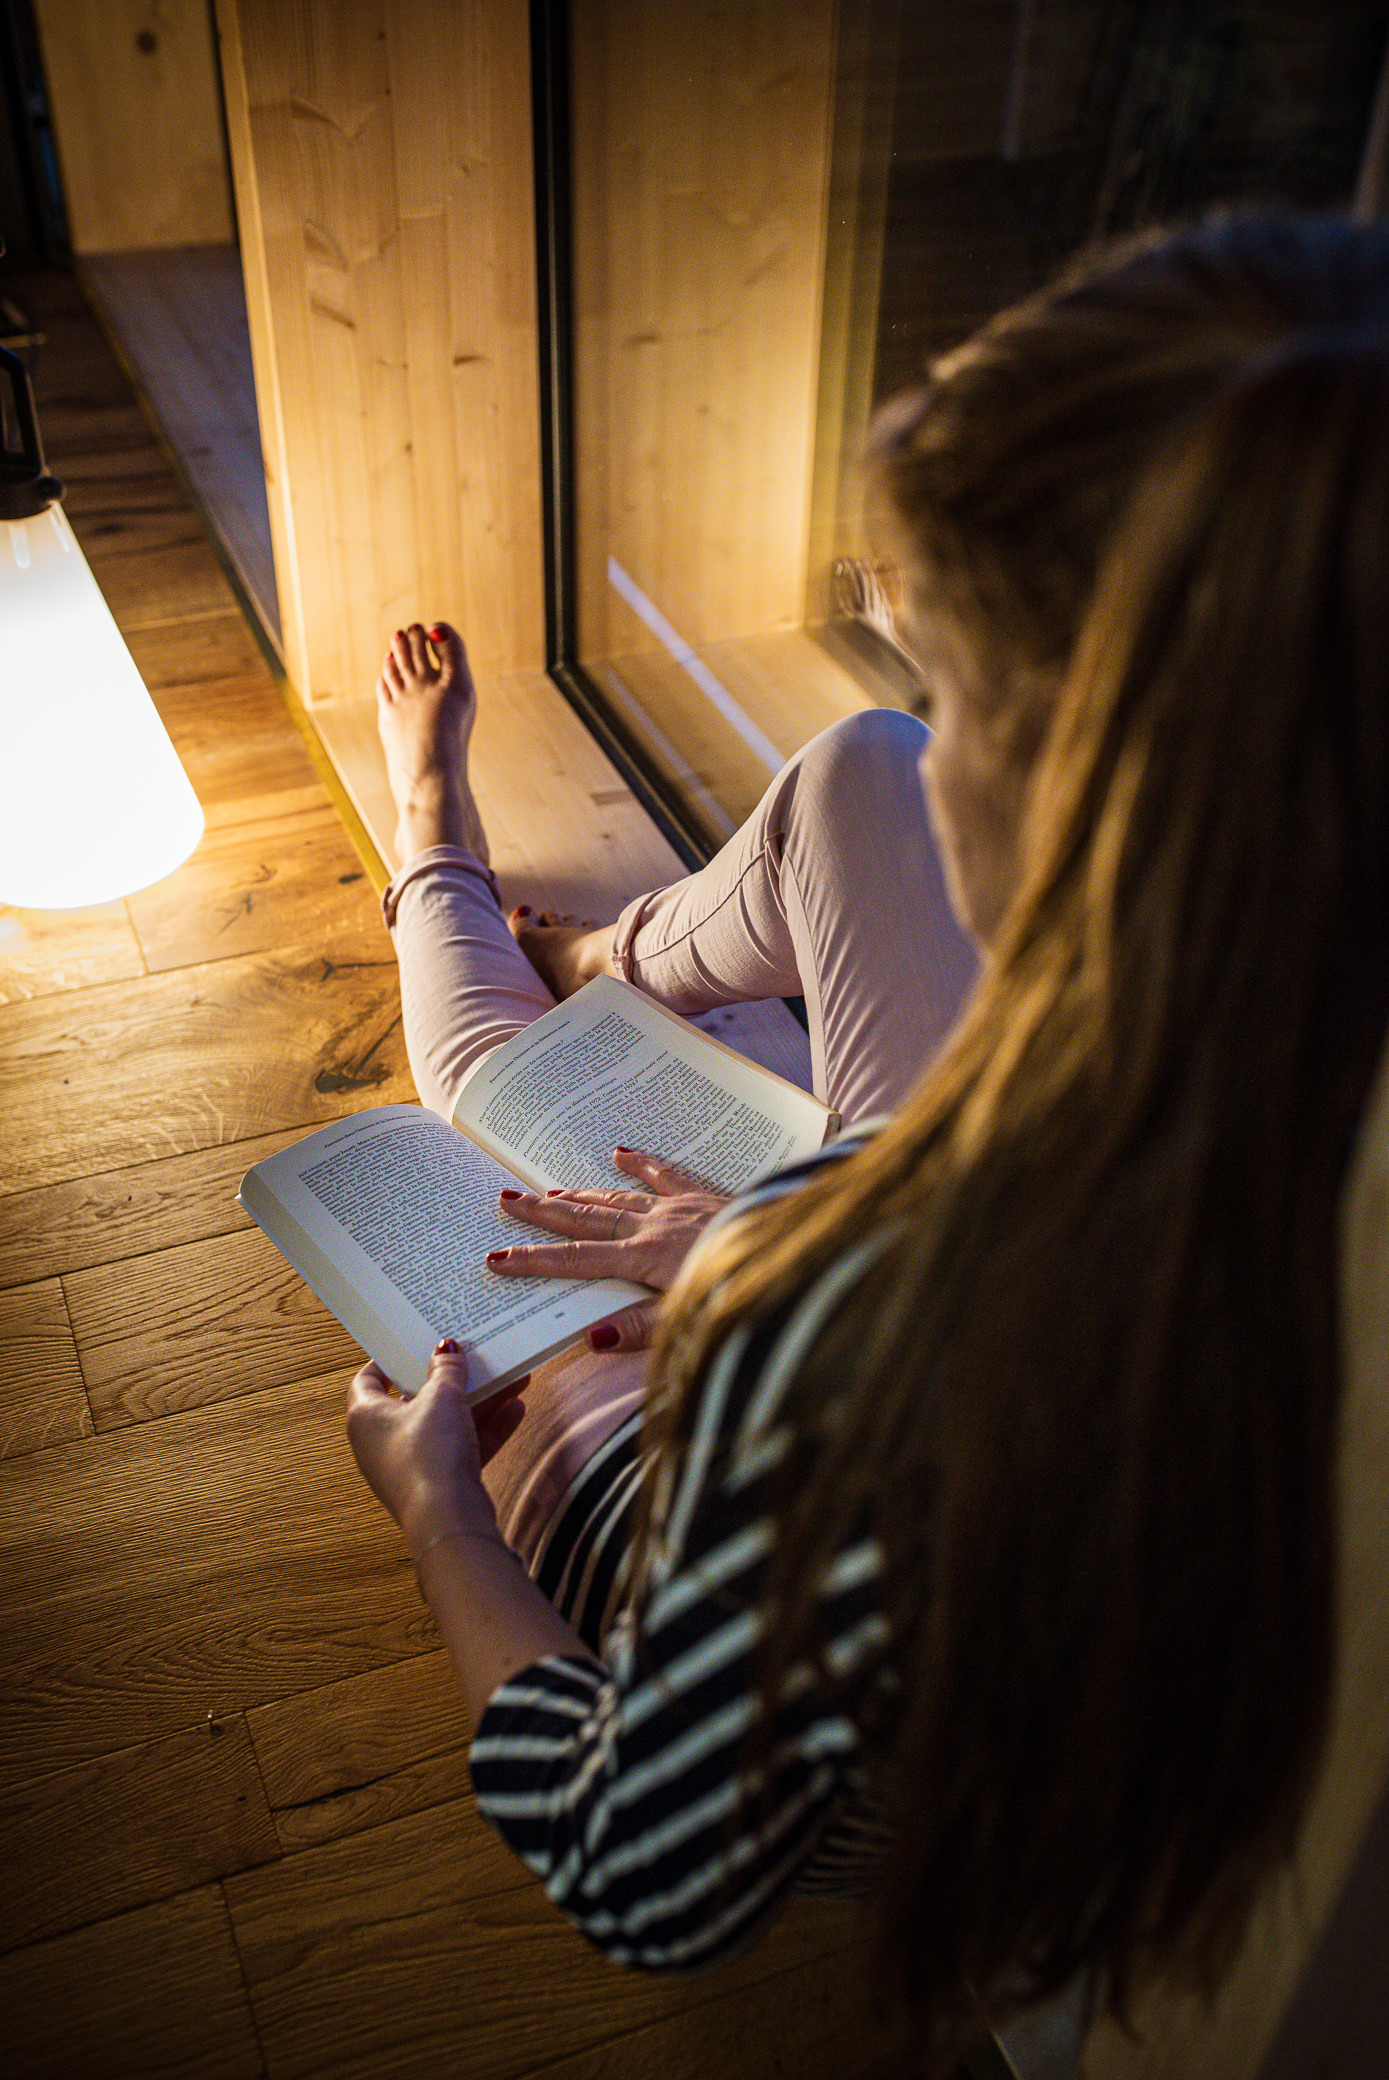 Jeune femmes en train de lire un livre, assises près d'une fenêtre. Elle est éclairé uniquement par une lampe